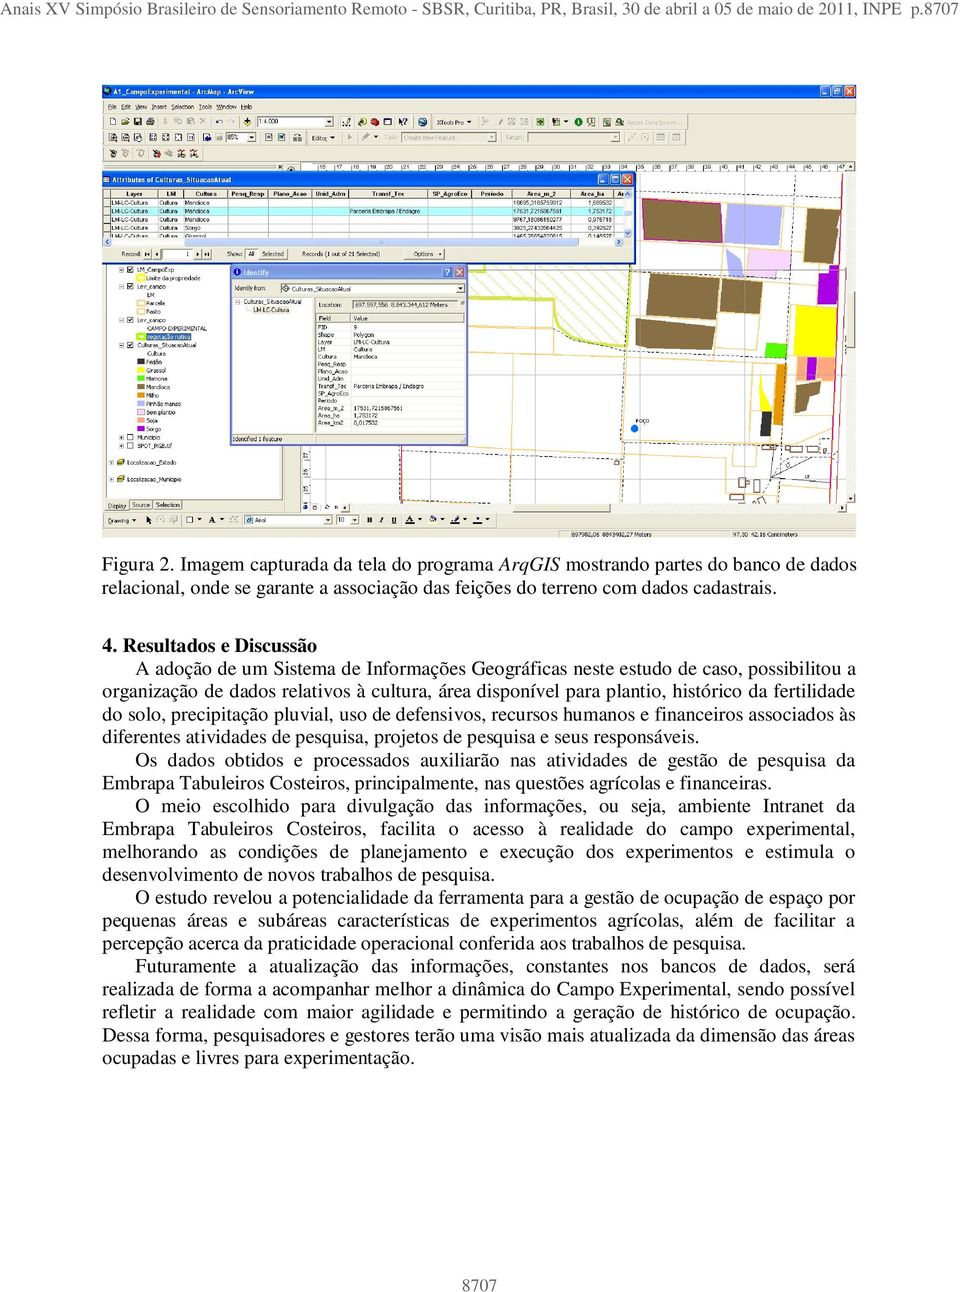 Imagem capturada da tela do programa ArqGIS mostrando partes do banco de dados relacional, onde se garante a associação das feições do terreno com dados cadastrais. 4.